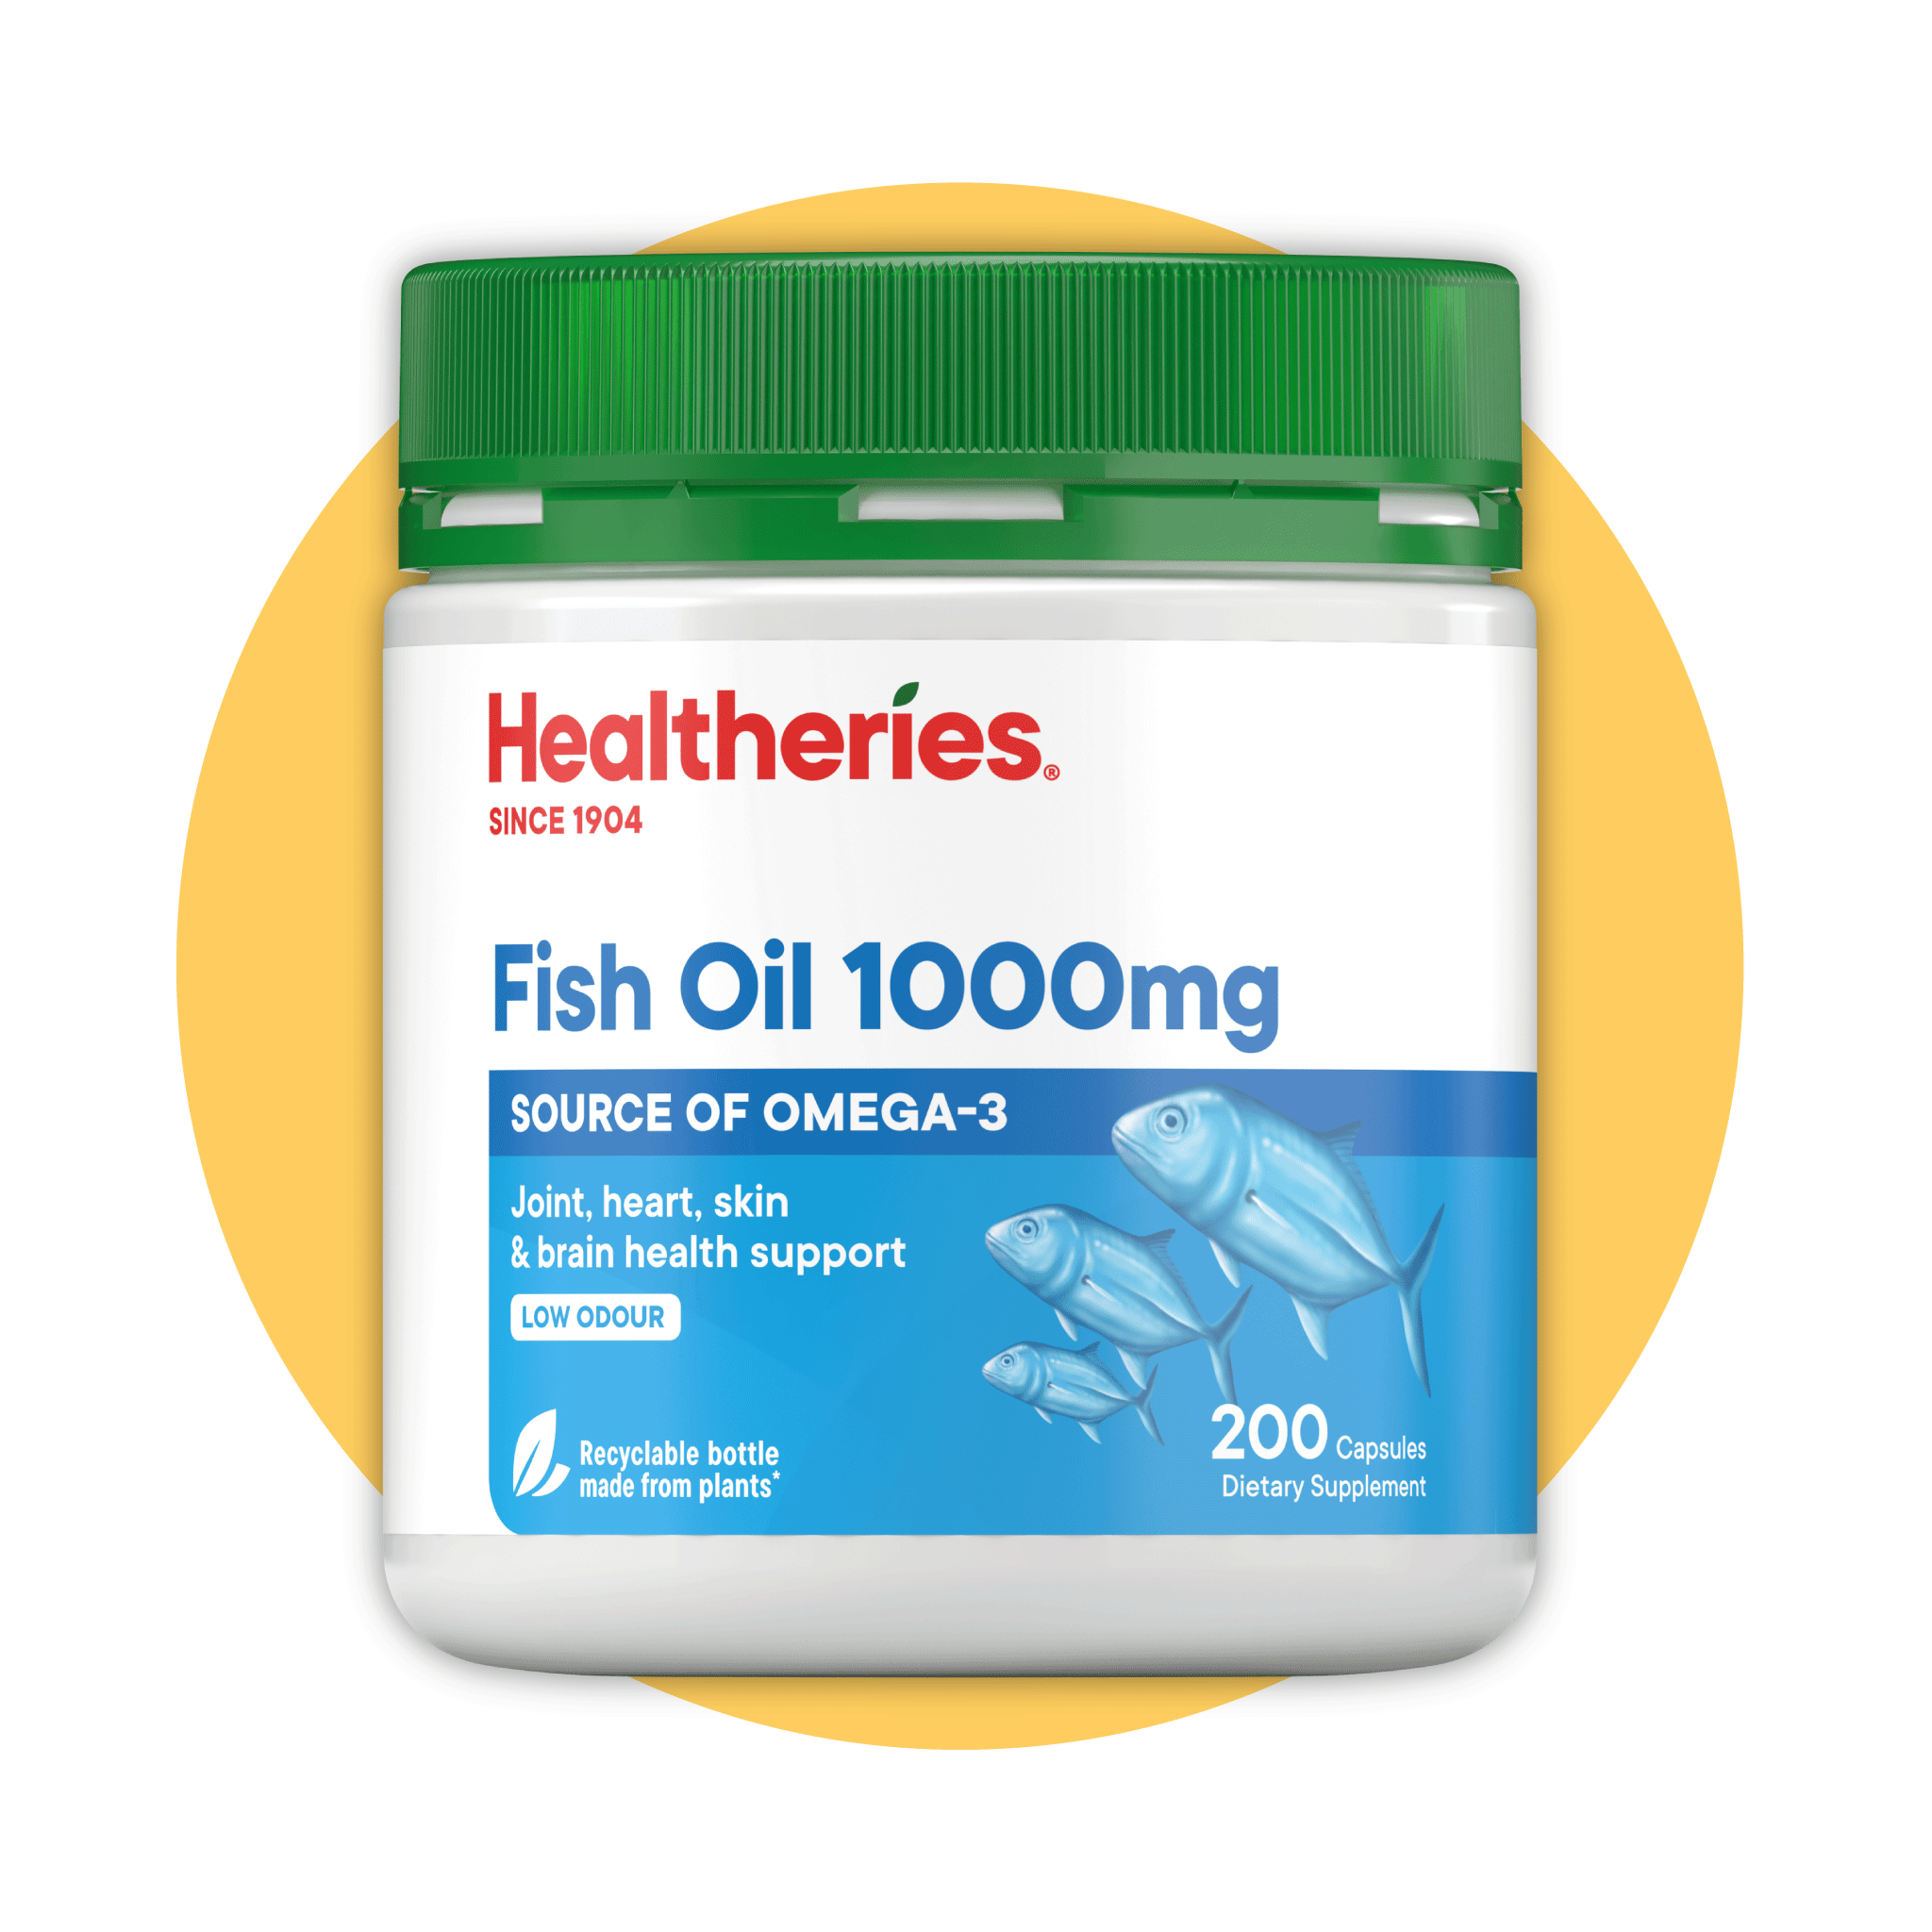 Healtheries Fish Oil 1000mg 200s - Healtheries Hong Kong